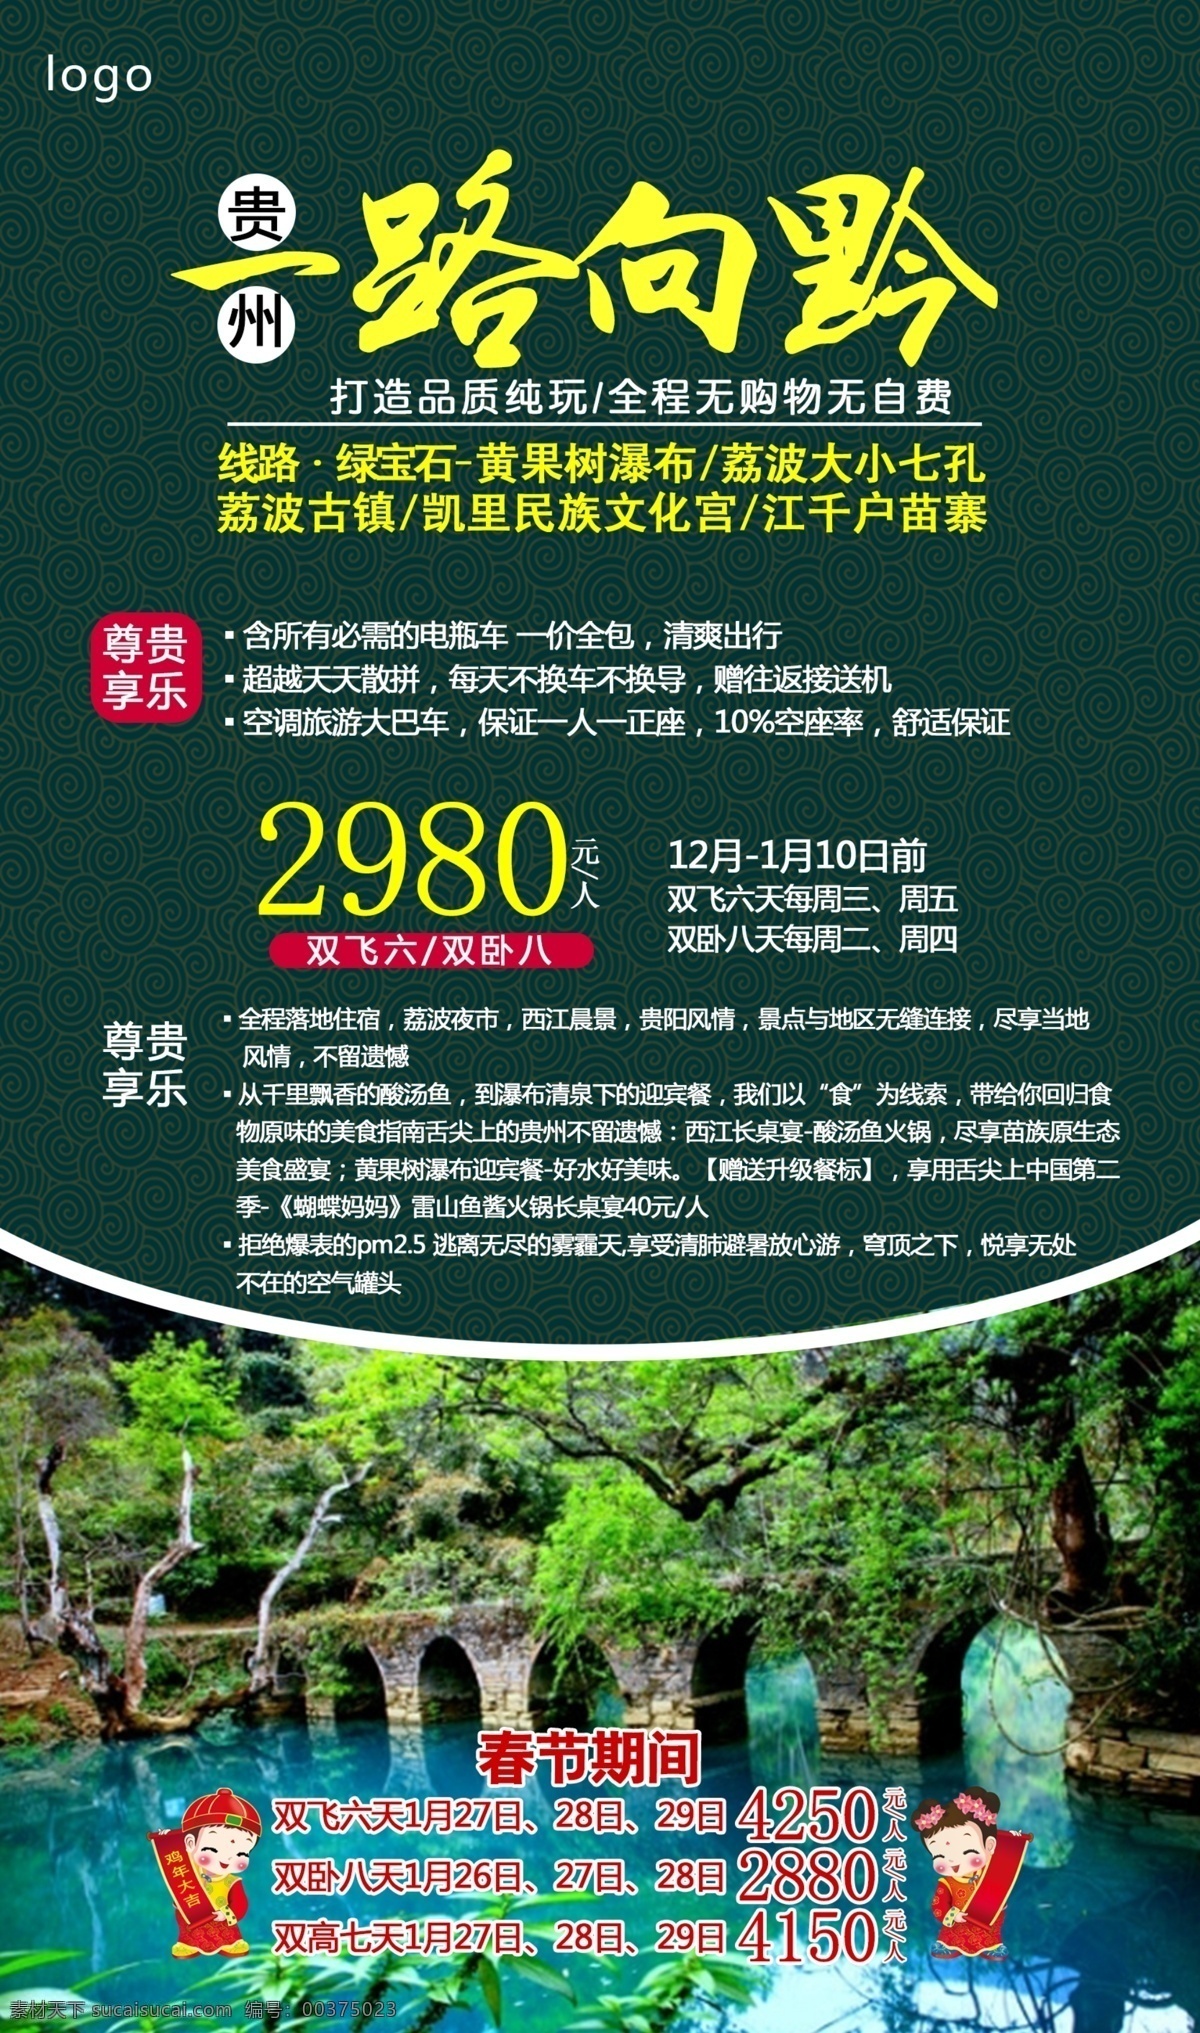 贵州八日游 贵州旅游 旅游宣传 旅游海报宣传 荔波小七孔 旅游